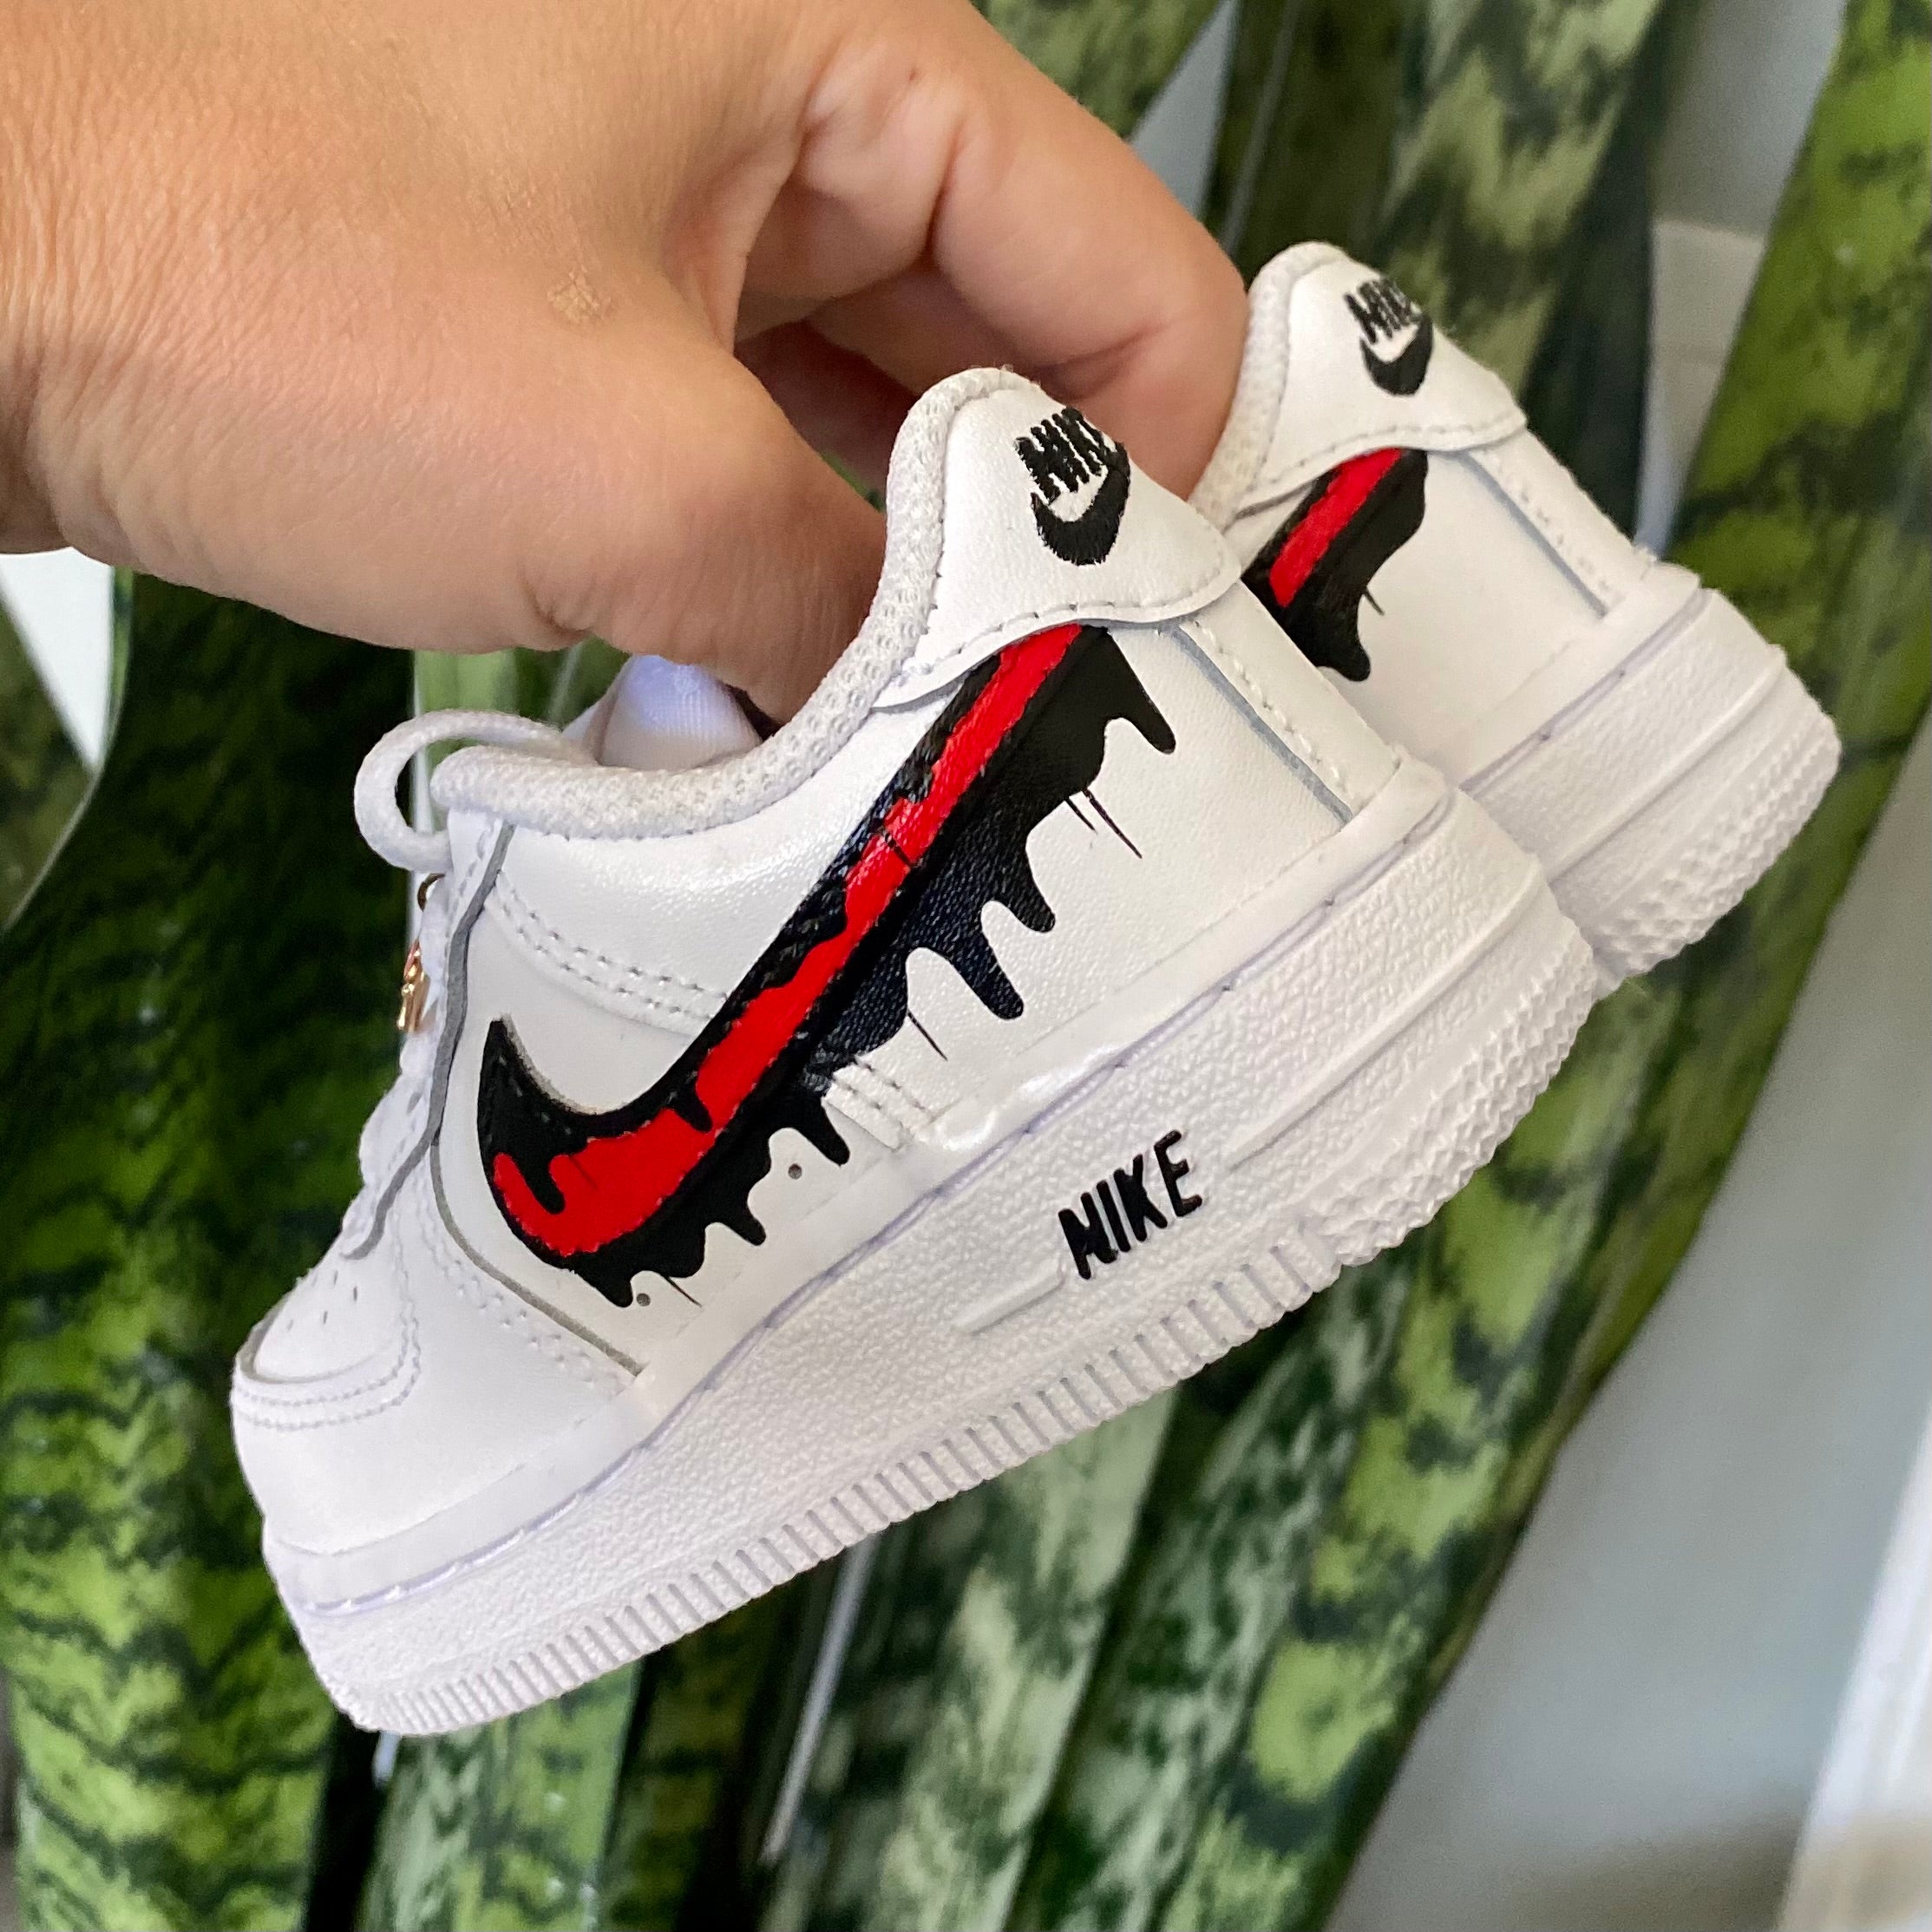 Nike Air Force 1 Custom Painted Sneakers